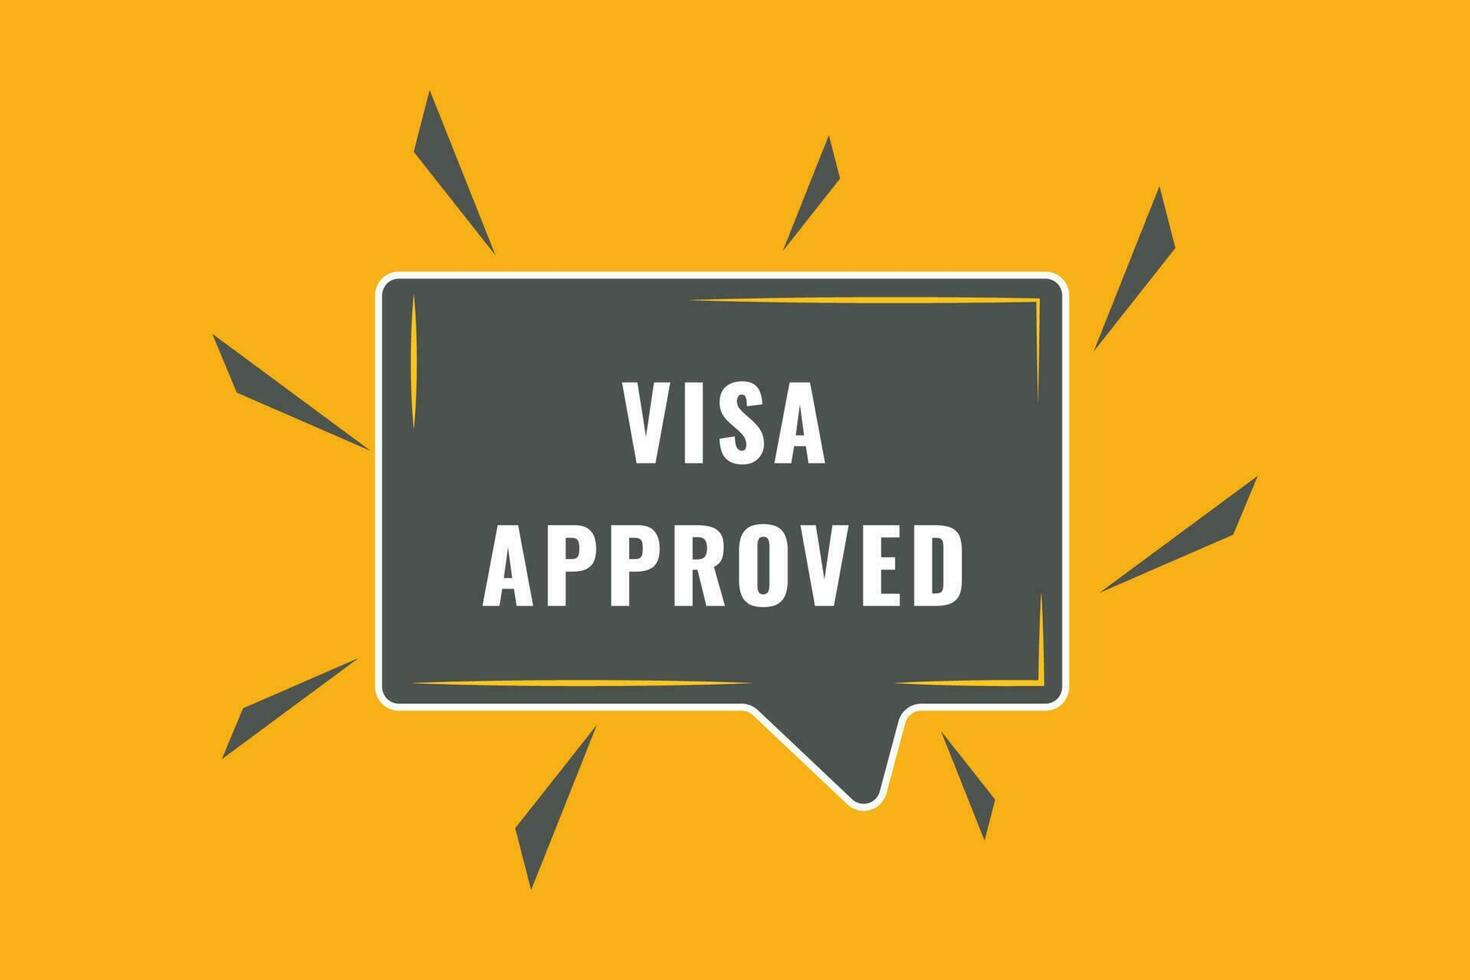 visa approuvé bouton. discours bulle, bannière étiquette visa approuvé vecteur